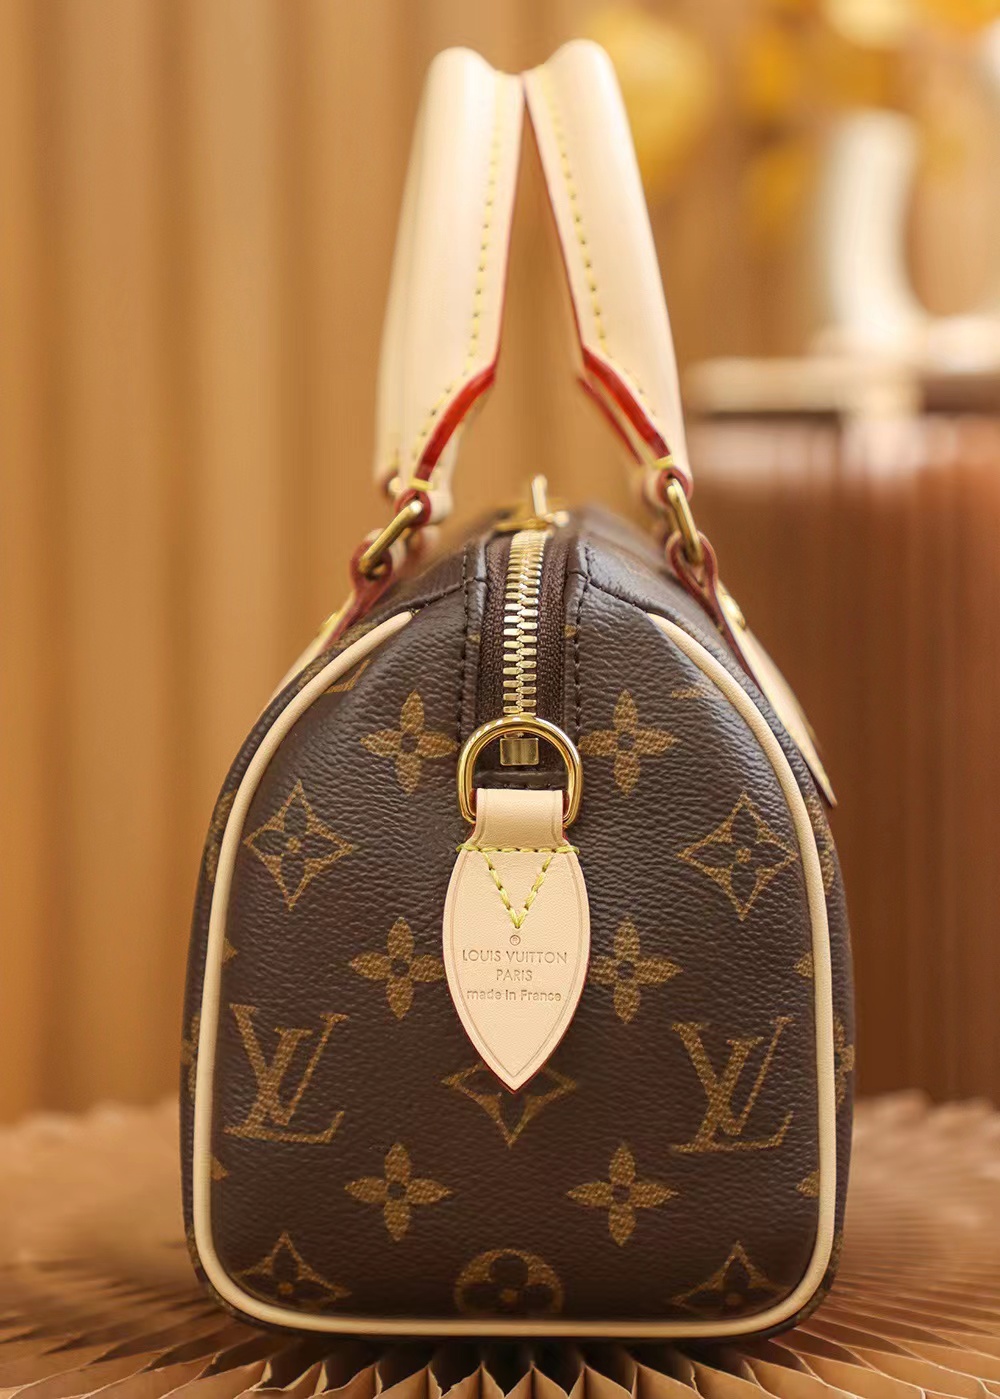 Best Replicas Bags - Louis Vuitton Speedy Bandoulière 20 M46234 Top Quality Louis Vuitton LV Replica Bags On Sales